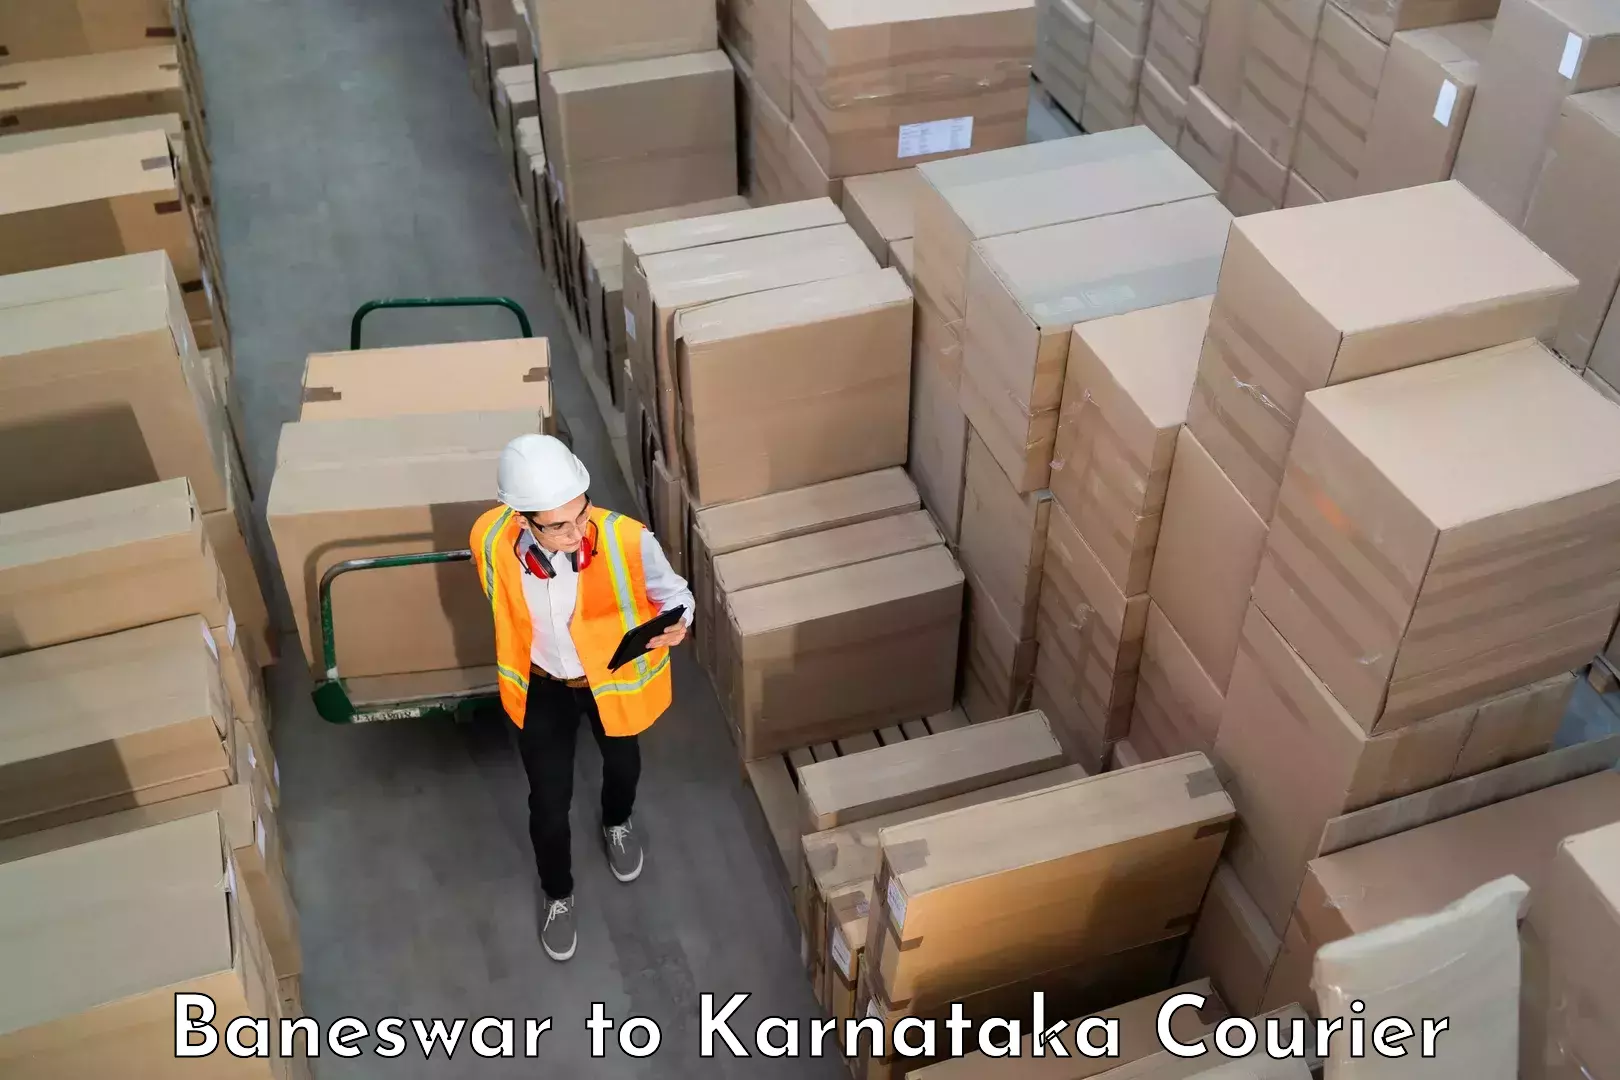 Luggage transport solutions Baneswar to Karnataka